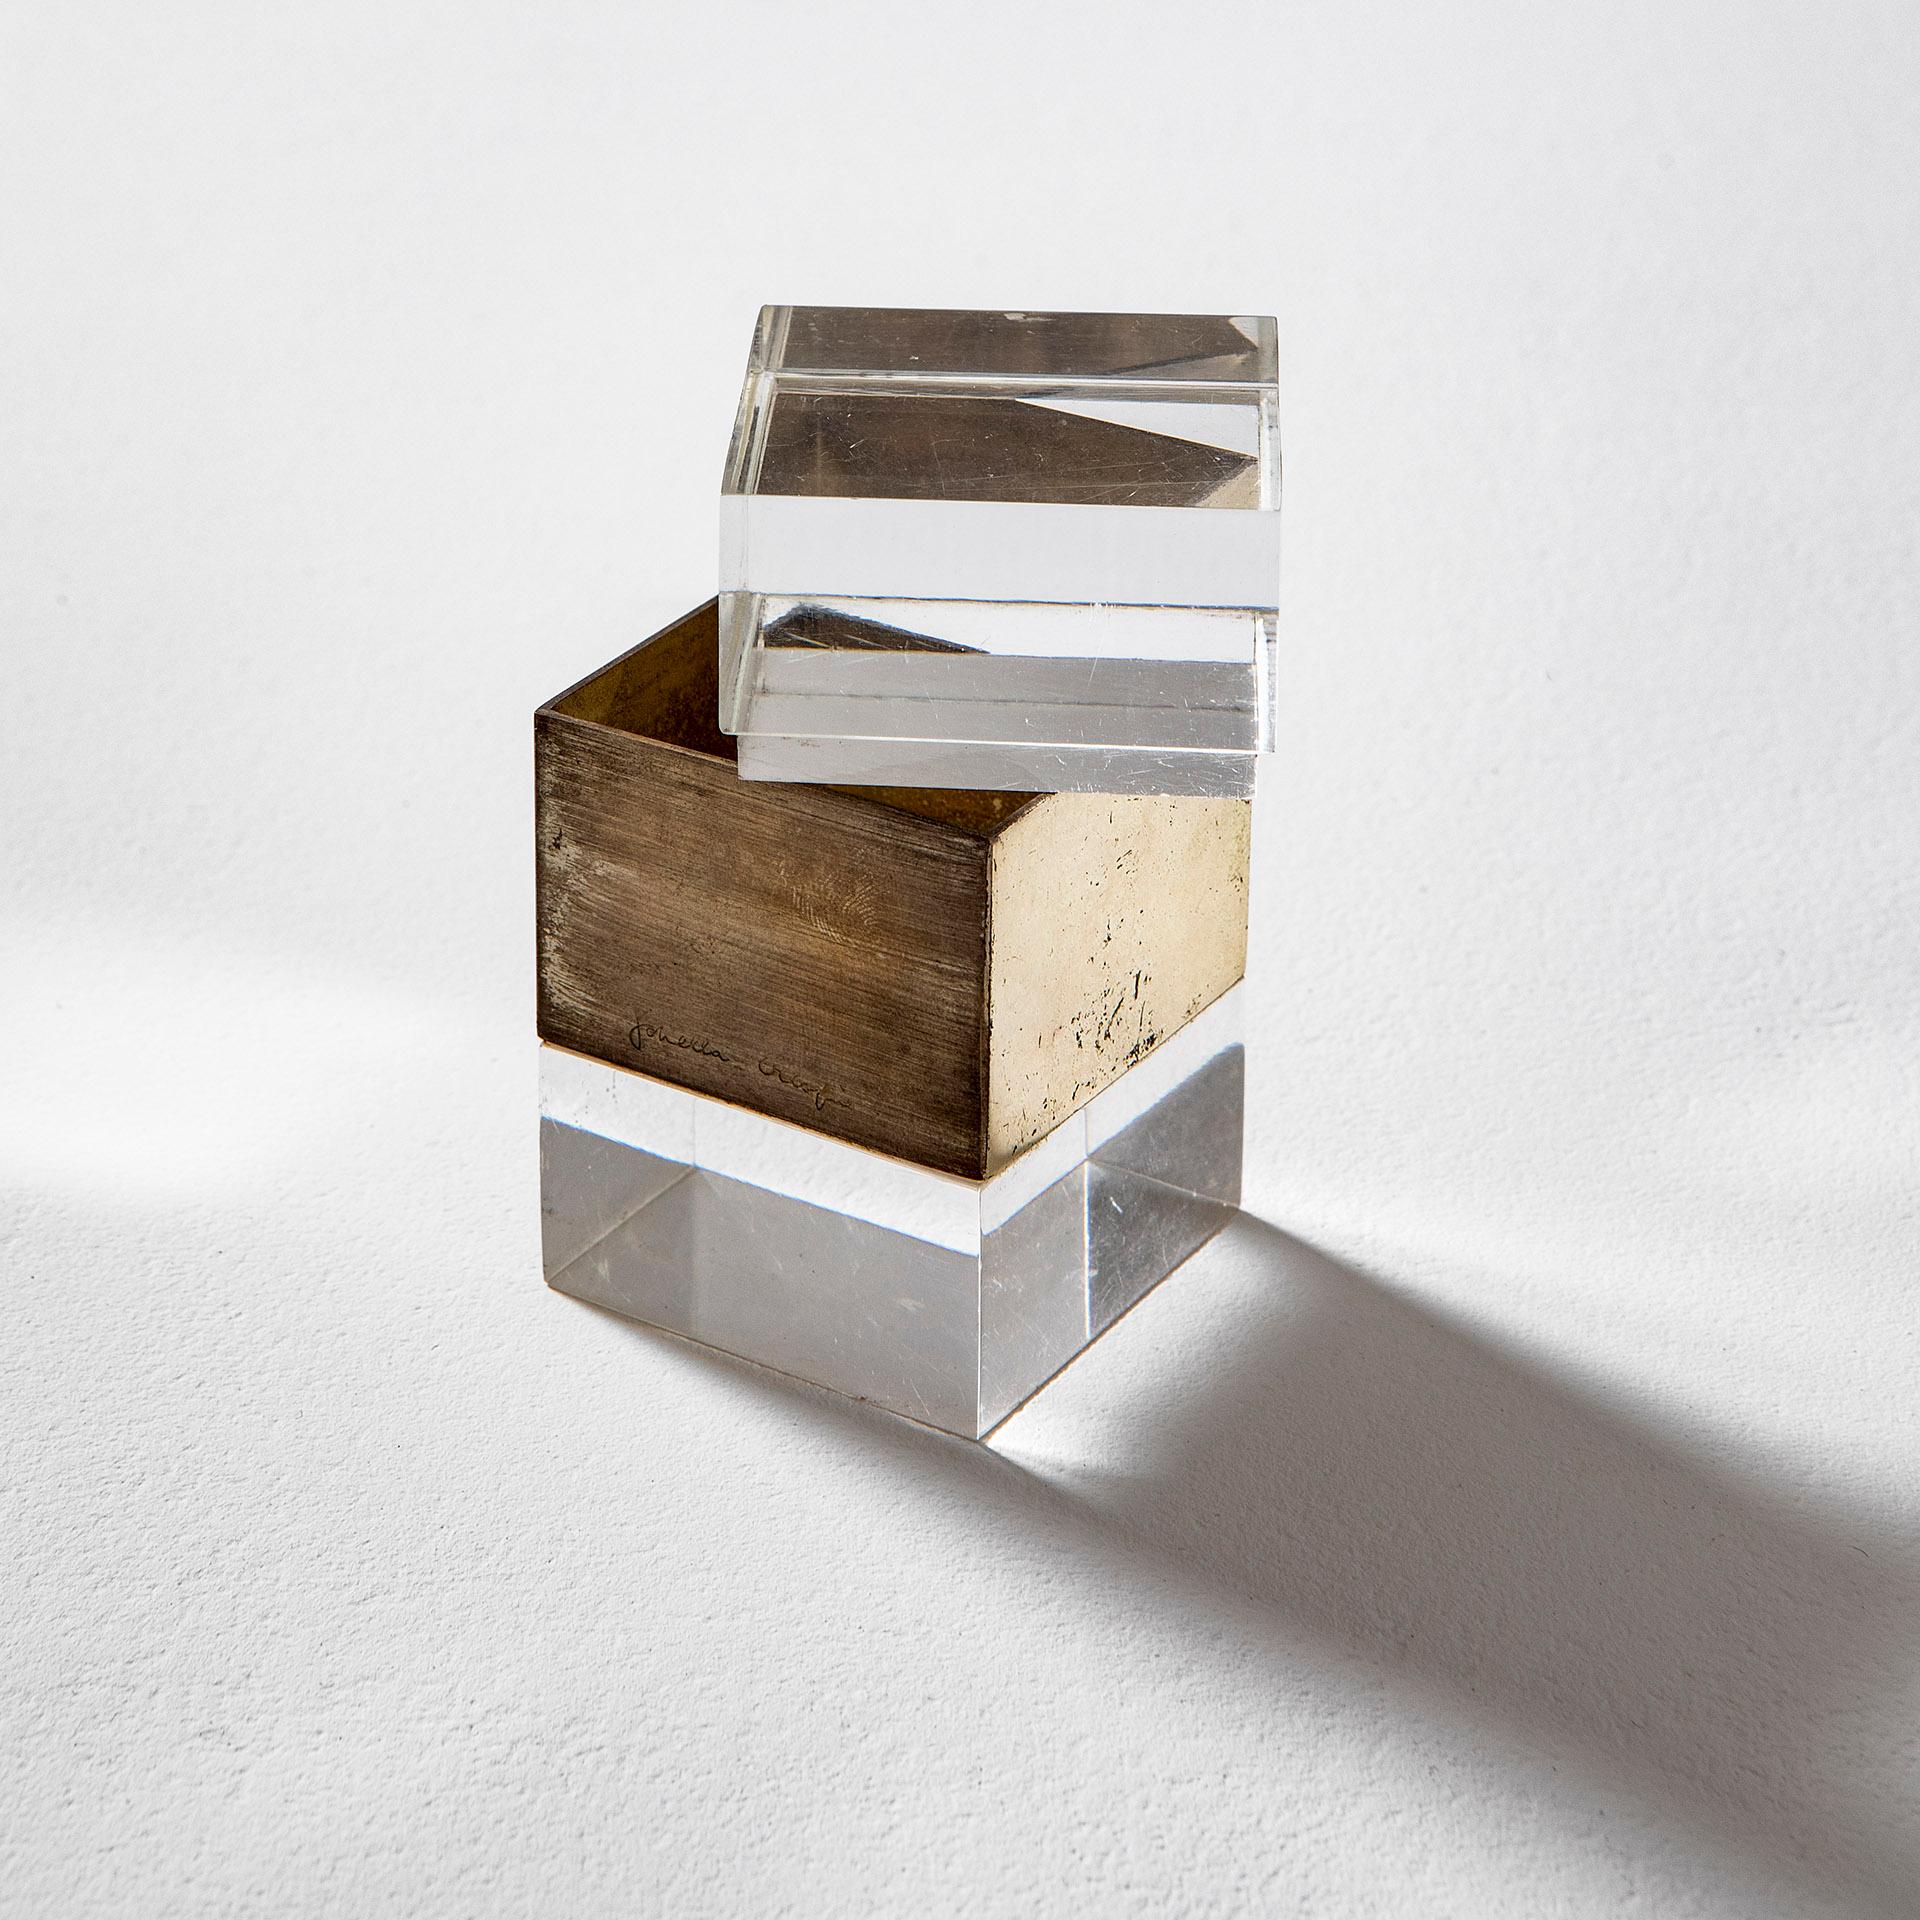 Dekorative Schachtel, entworfen in den 70er Jahren von Gabriella Crespi. Die Box ist aus Plexiglas und Messing, auf dem Messing ist die Unterschrift des Autors vorhanden.
Guter Zustand, Patina der Zeit. Ideal auch für Schmuck, für den Schreibtisch